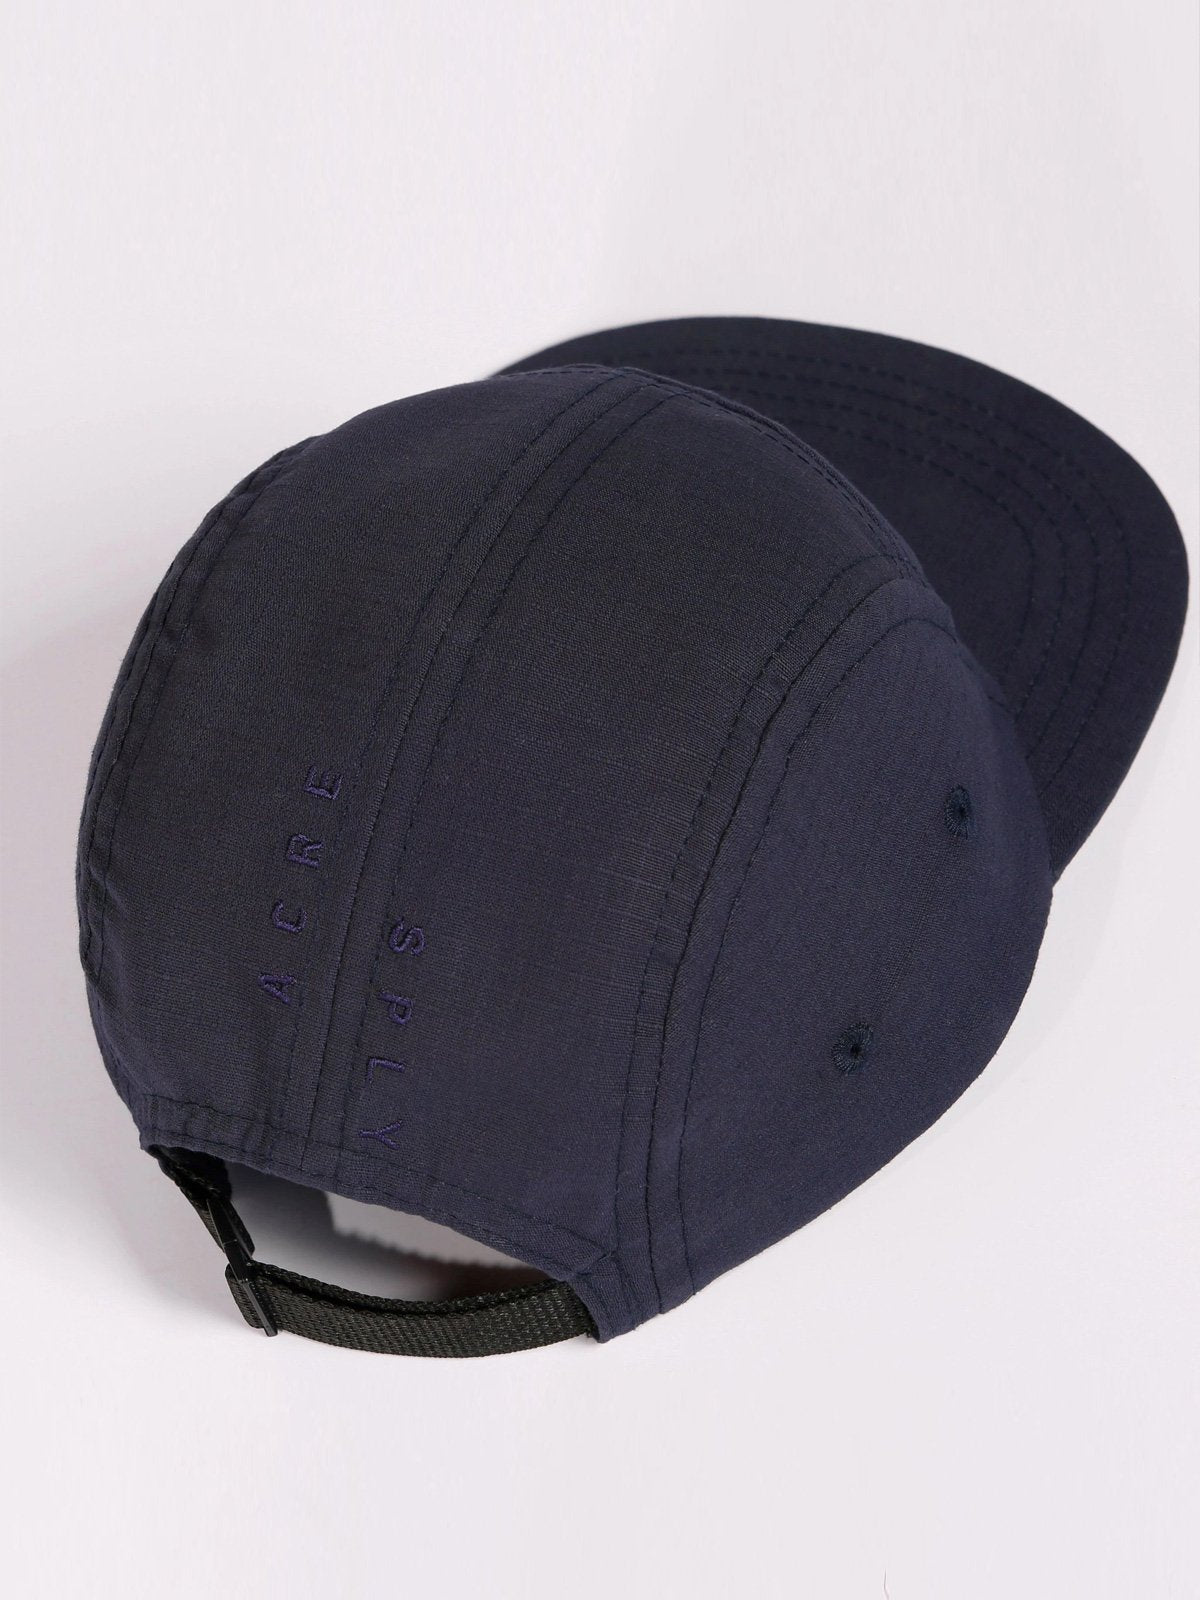 Farik Five Panel Hat by Mission Workshop - Säänkestävät laukut ja tekniset vaatteet - San Francisco & Los Angeles - Rakennettu kestämään - ikuisesti taattu